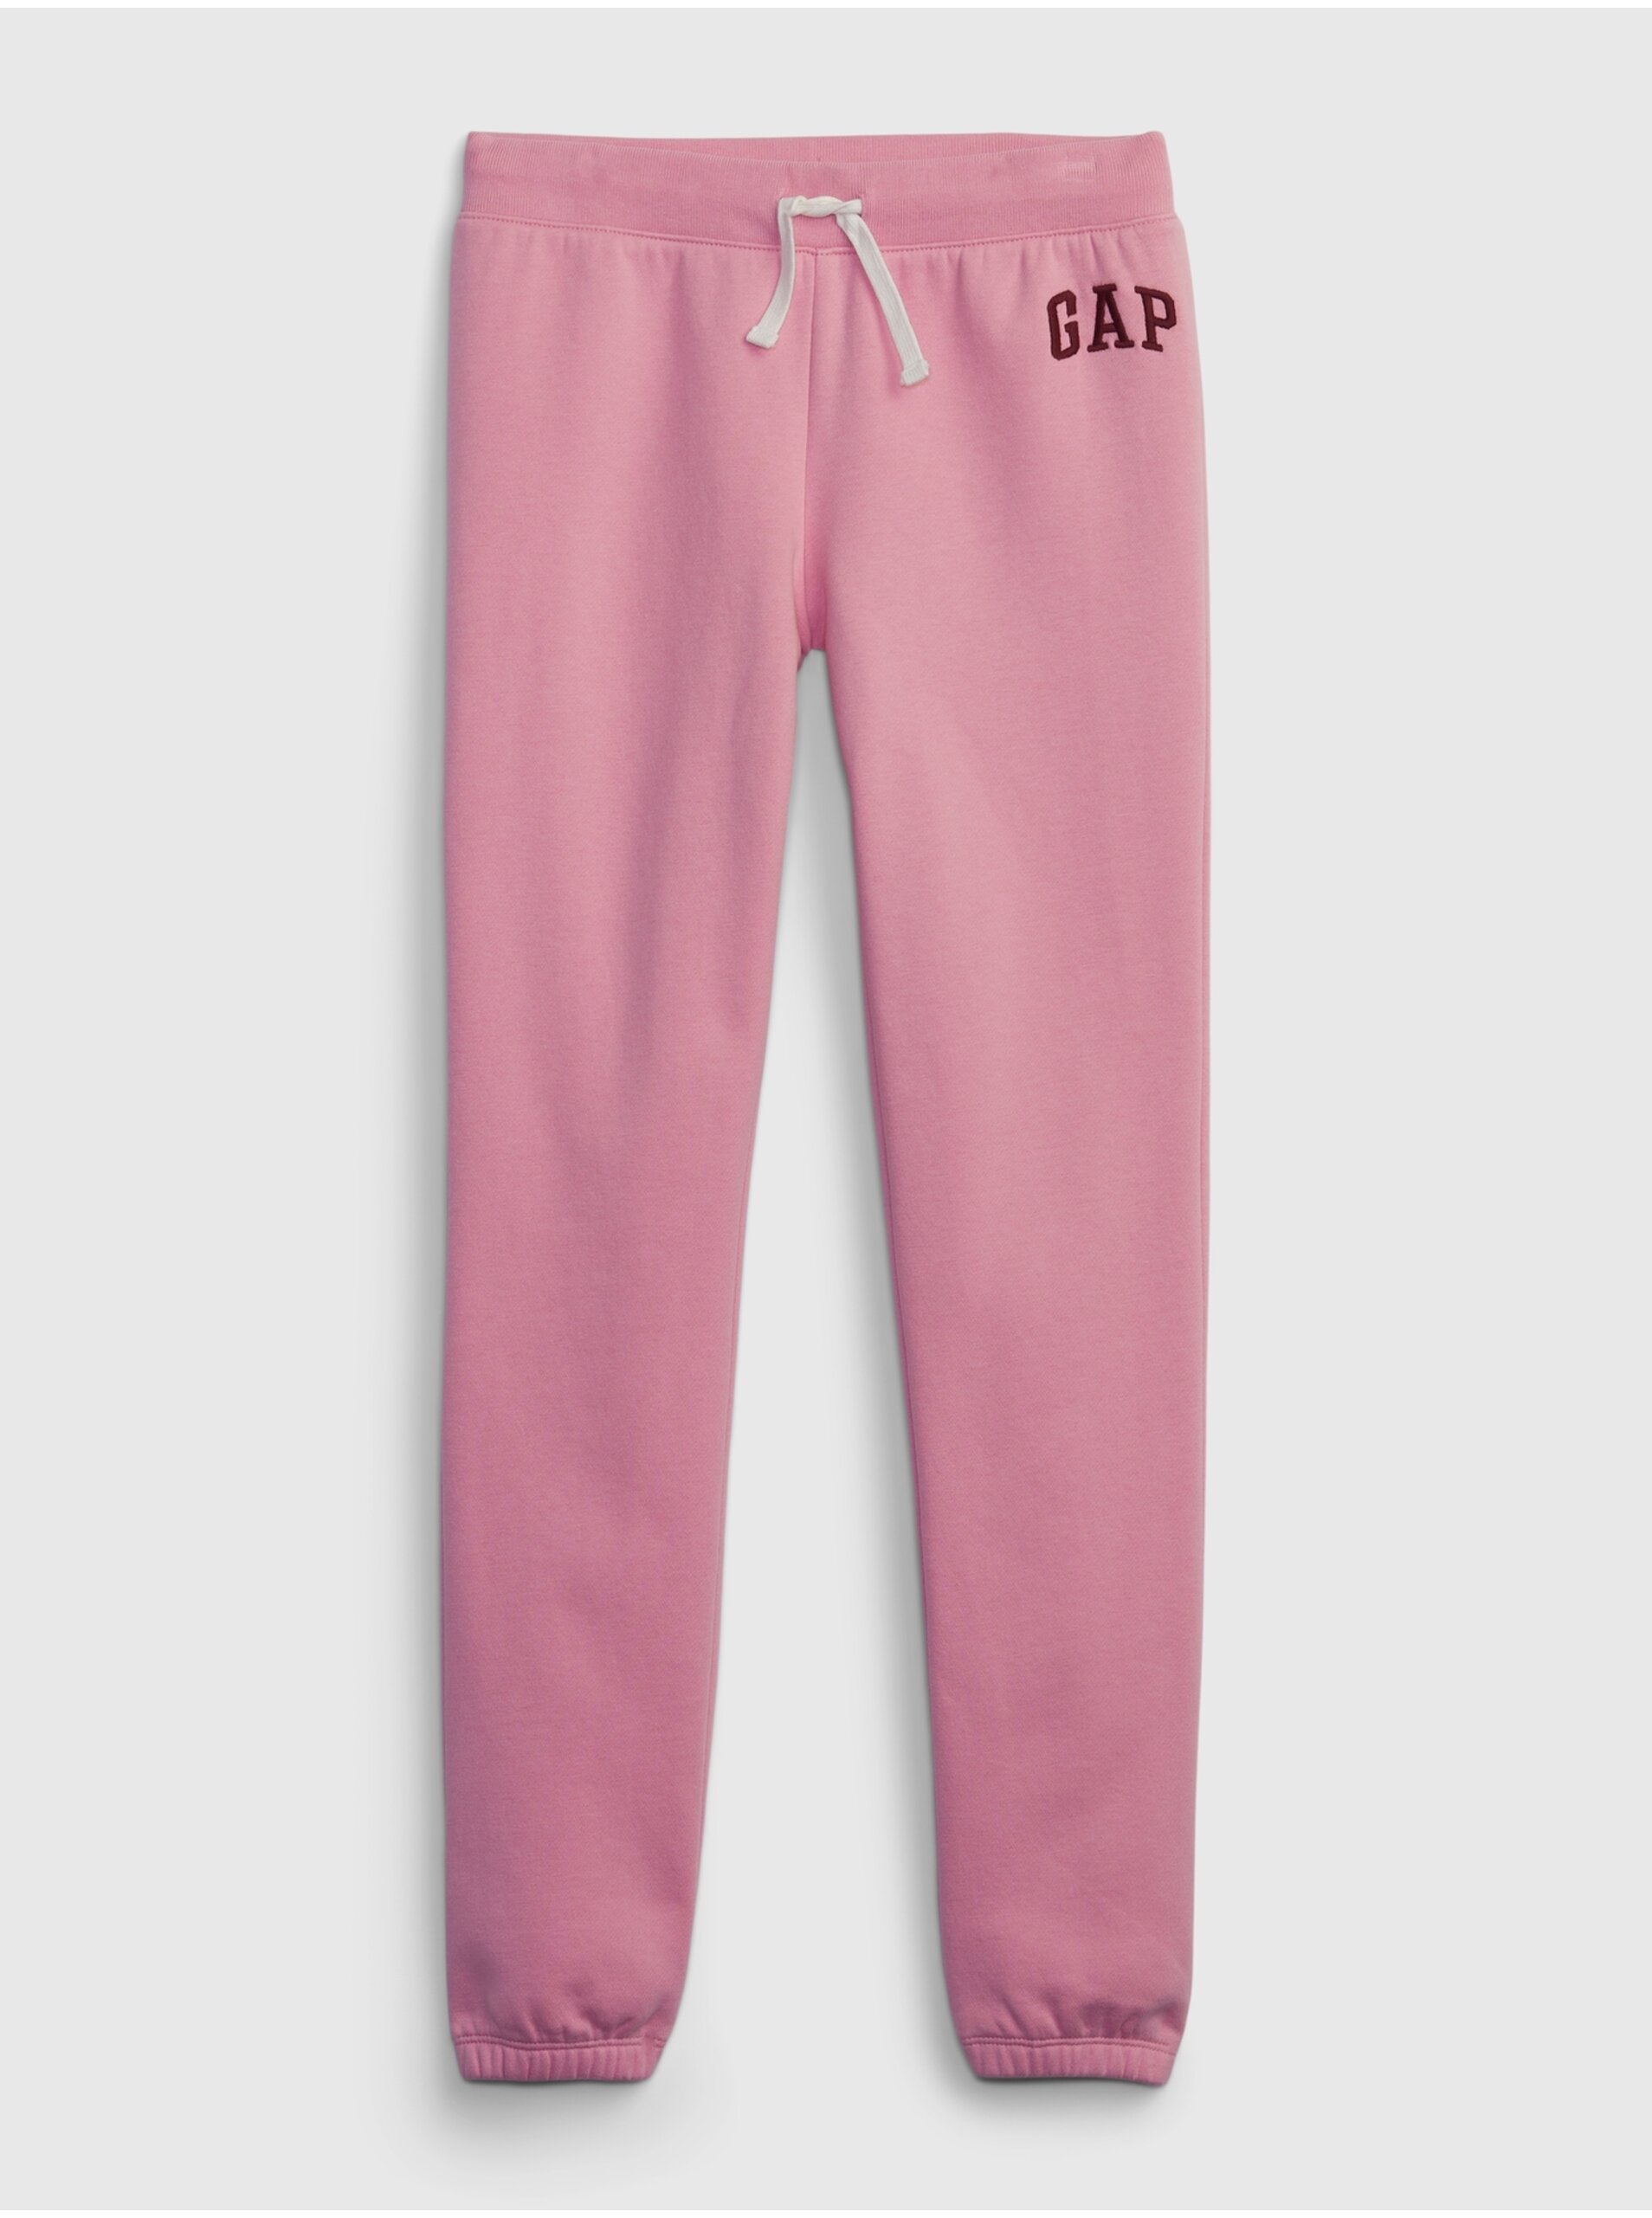 Lacno Ružové dievčenské tepláky s logom GAP